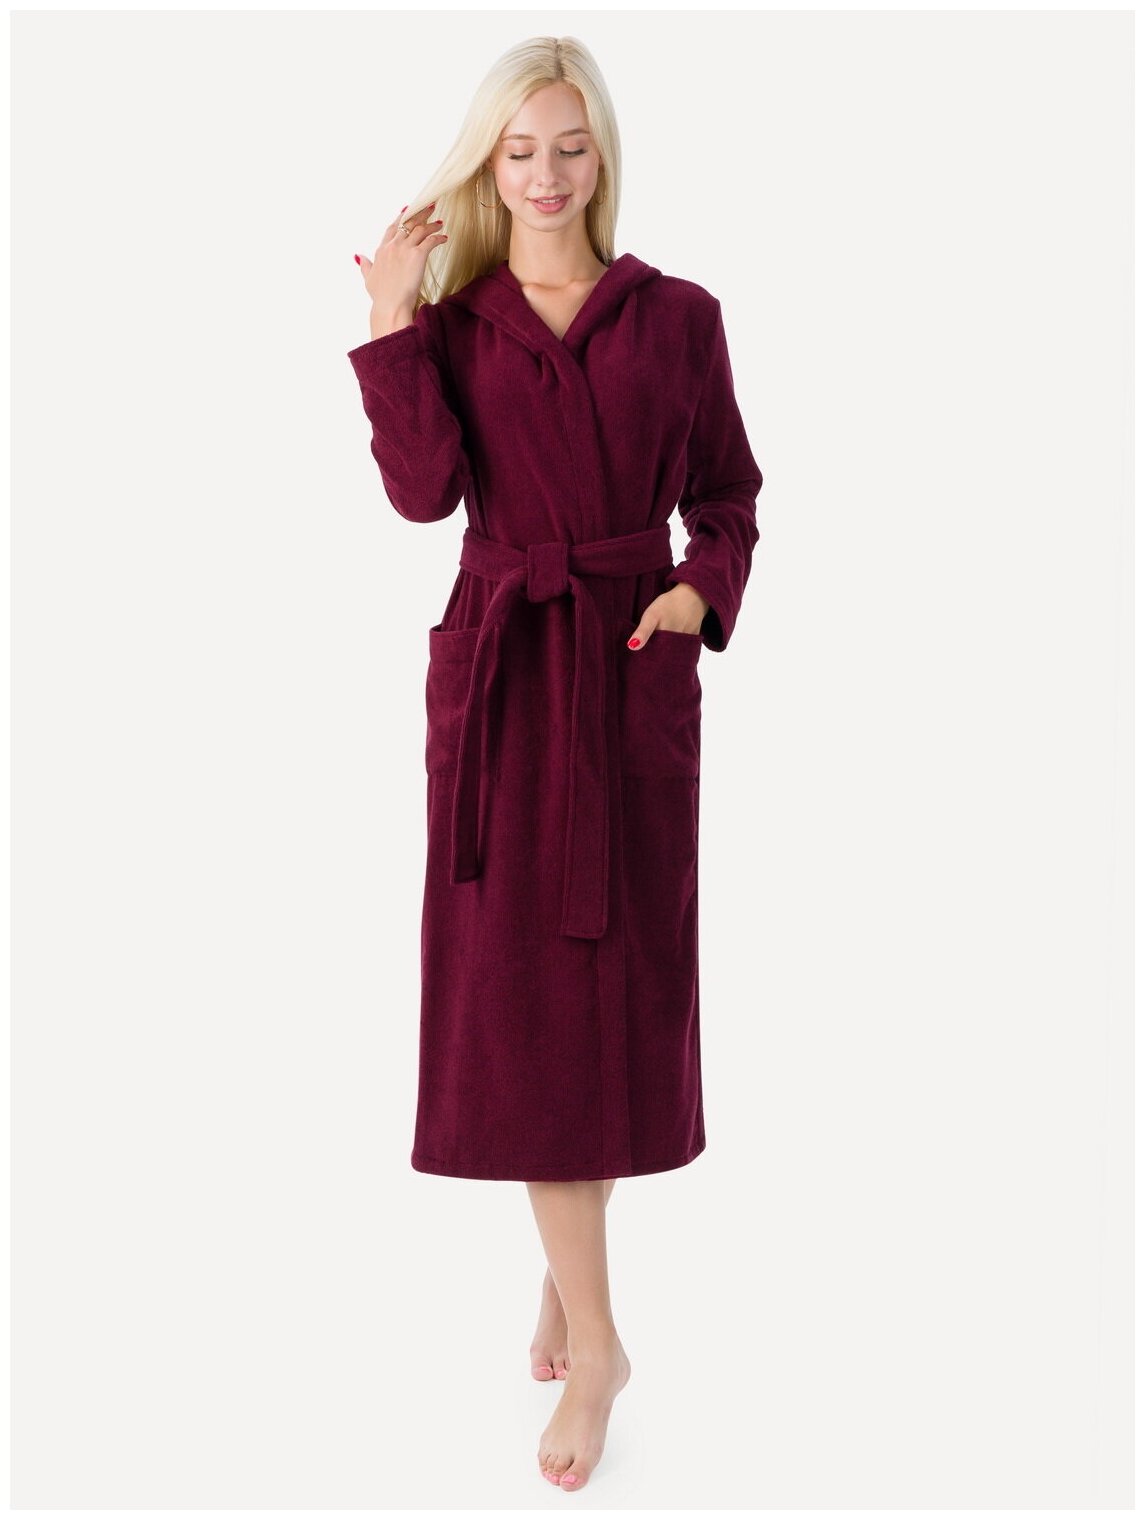 Женский халат с капюшоном, темно-бордовый - фотография № 2